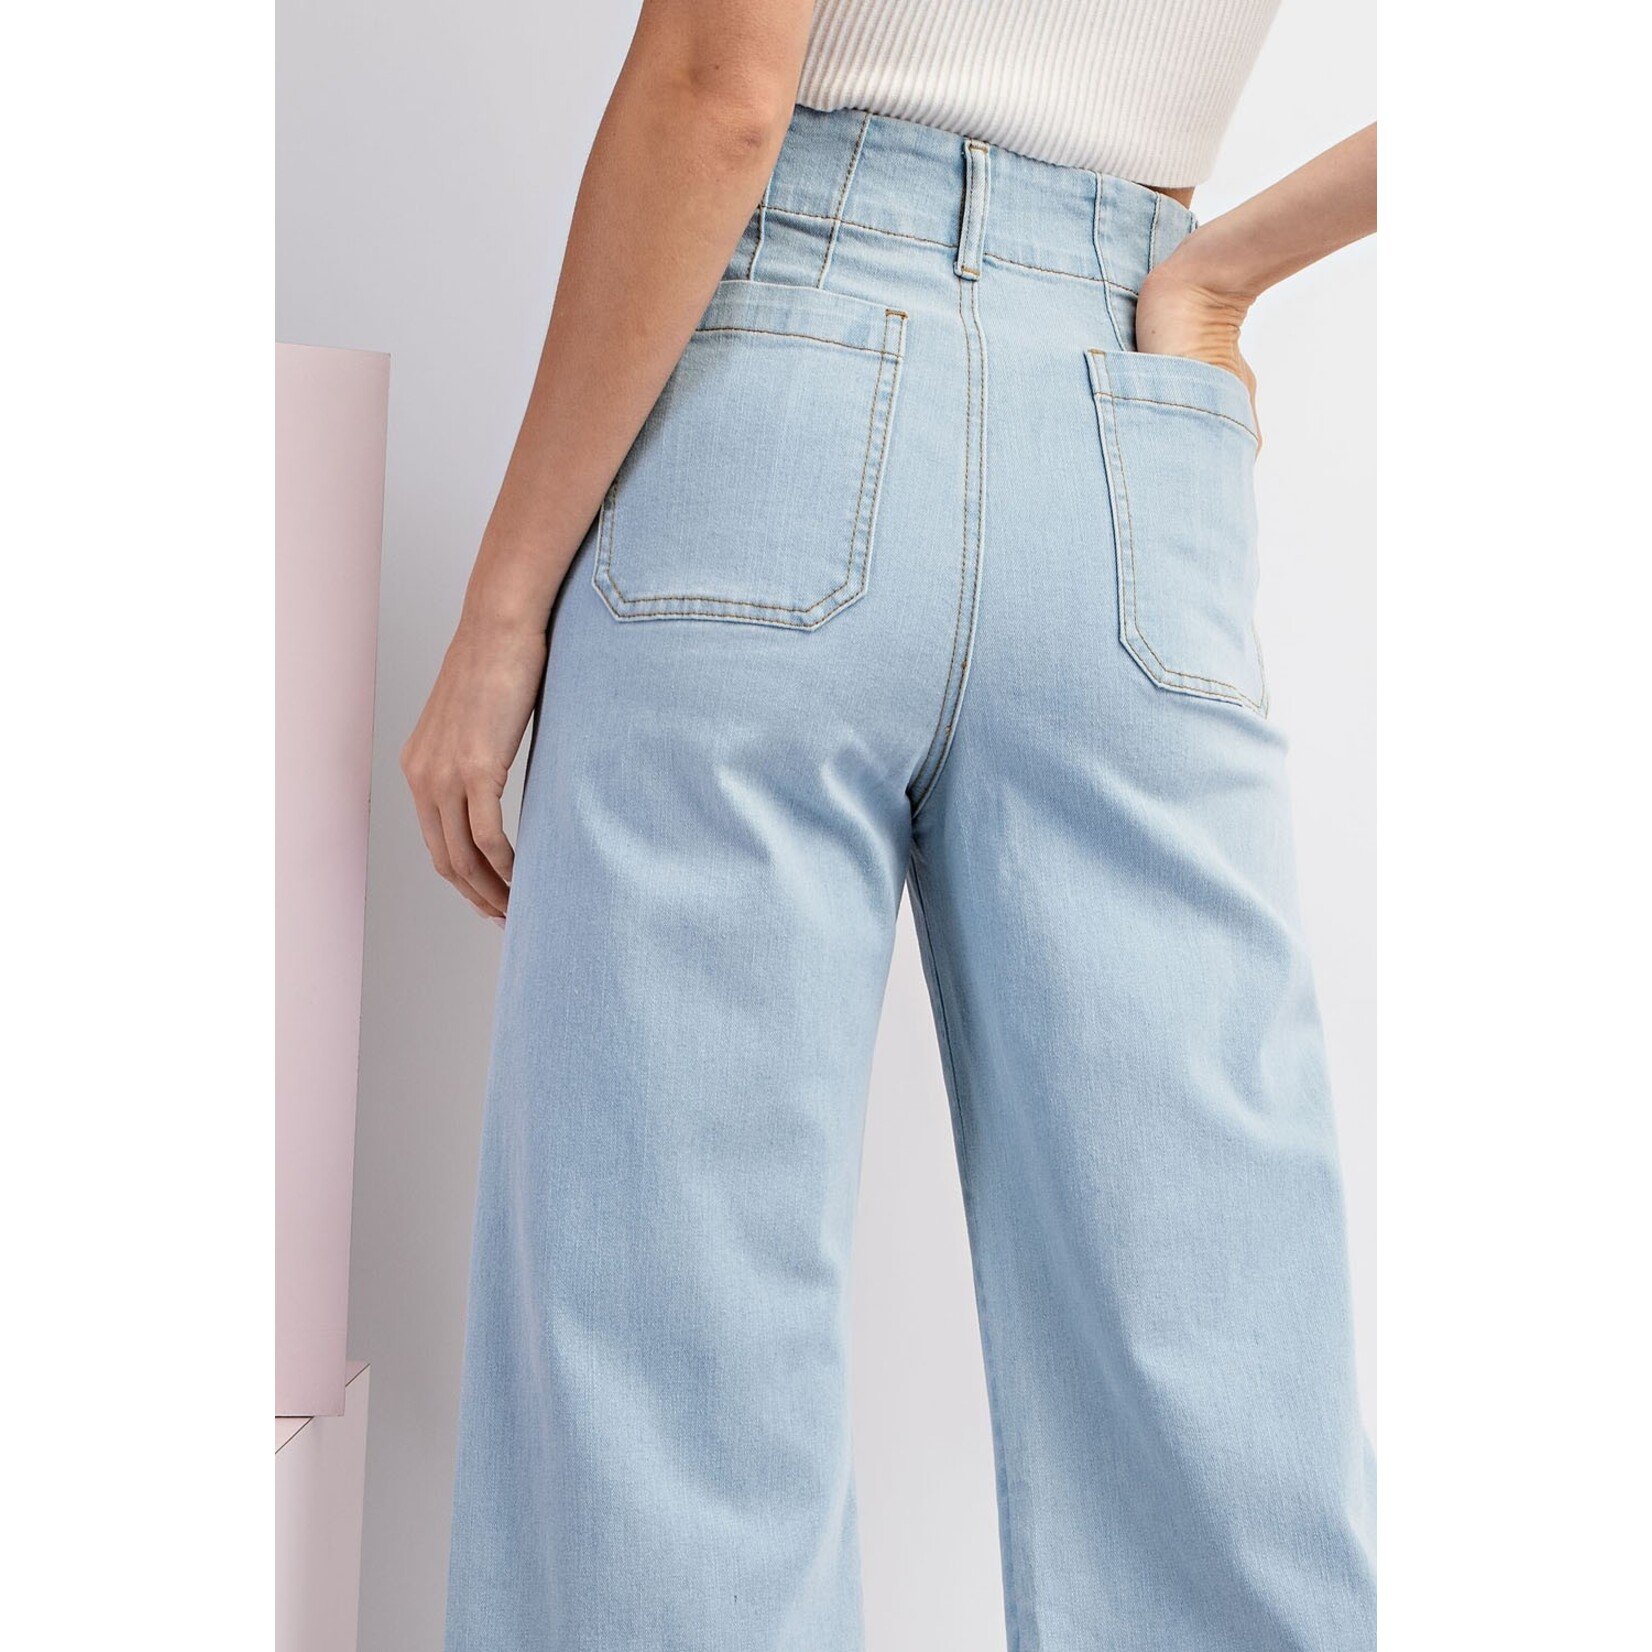 ee:some Vivian Denim Jeans